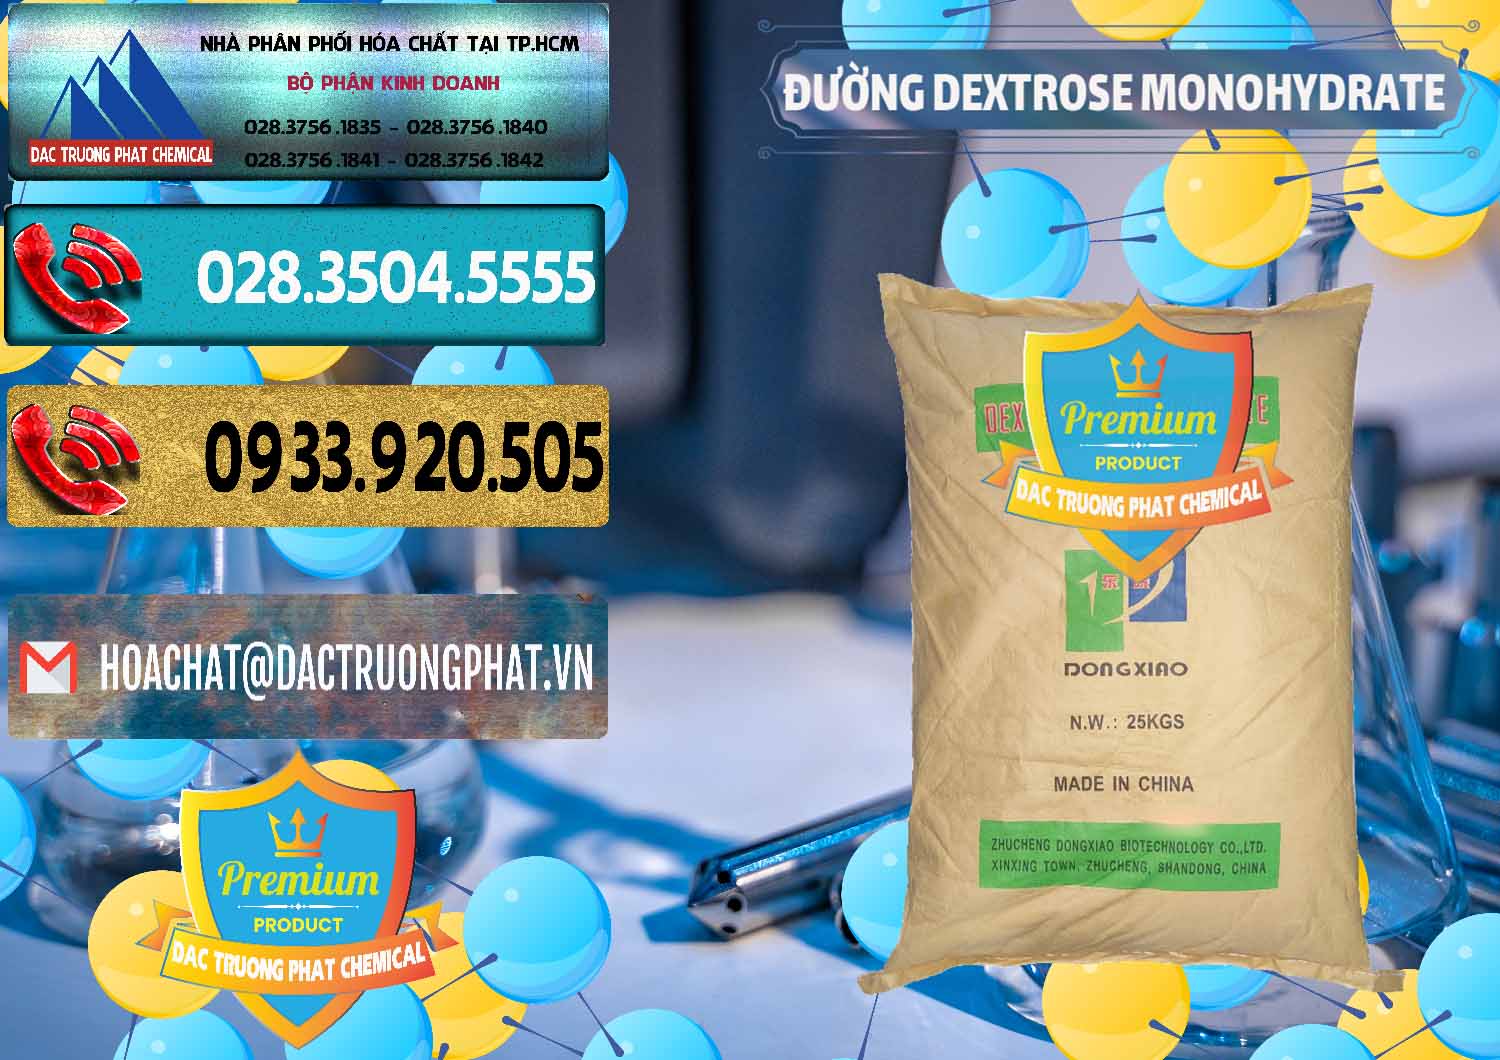 Nơi chuyên nhập khẩu _ bán Đường Dextrose Monohydrate Food Grade Dongxiao Trung Quốc China - 0063 - Đơn vị chuyên cung cấp & kinh doanh hóa chất tại TP.HCM - hoachatdetnhuom.com